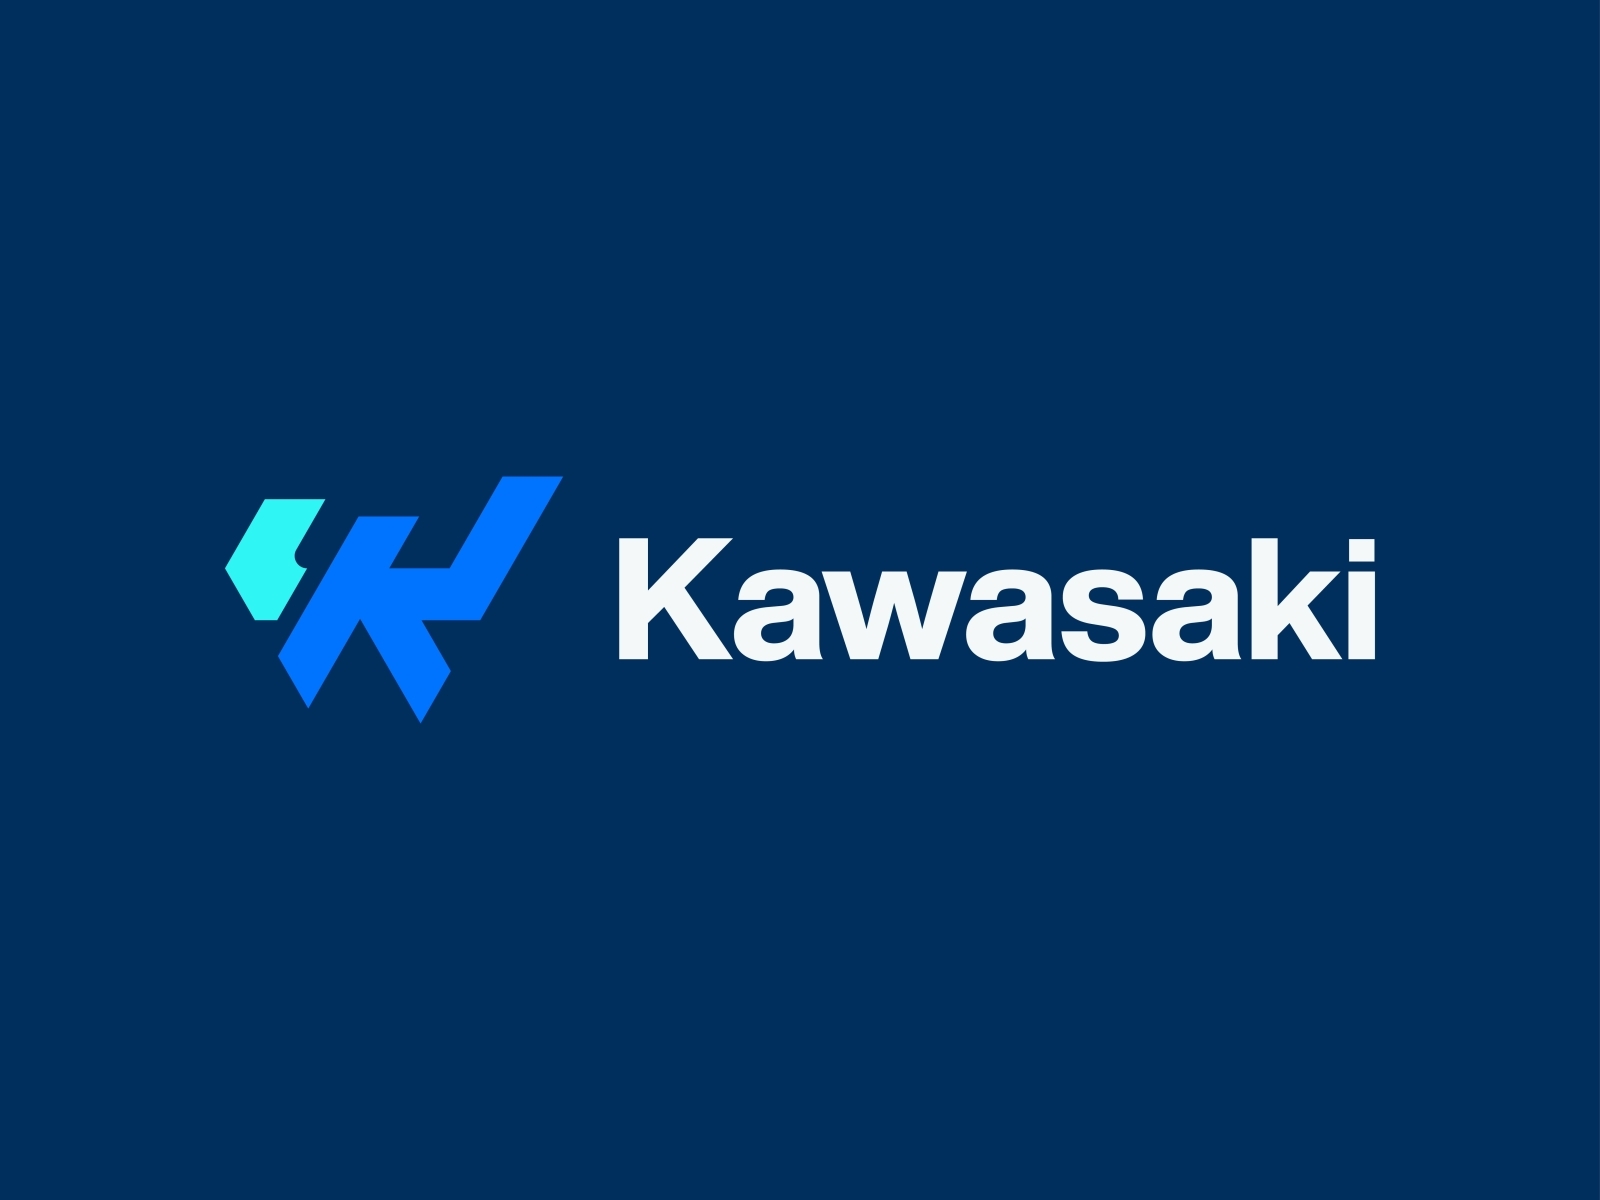 Kawasaki River Mark Logo Decal Sheet K062-9514-BKNS - Walmart.com